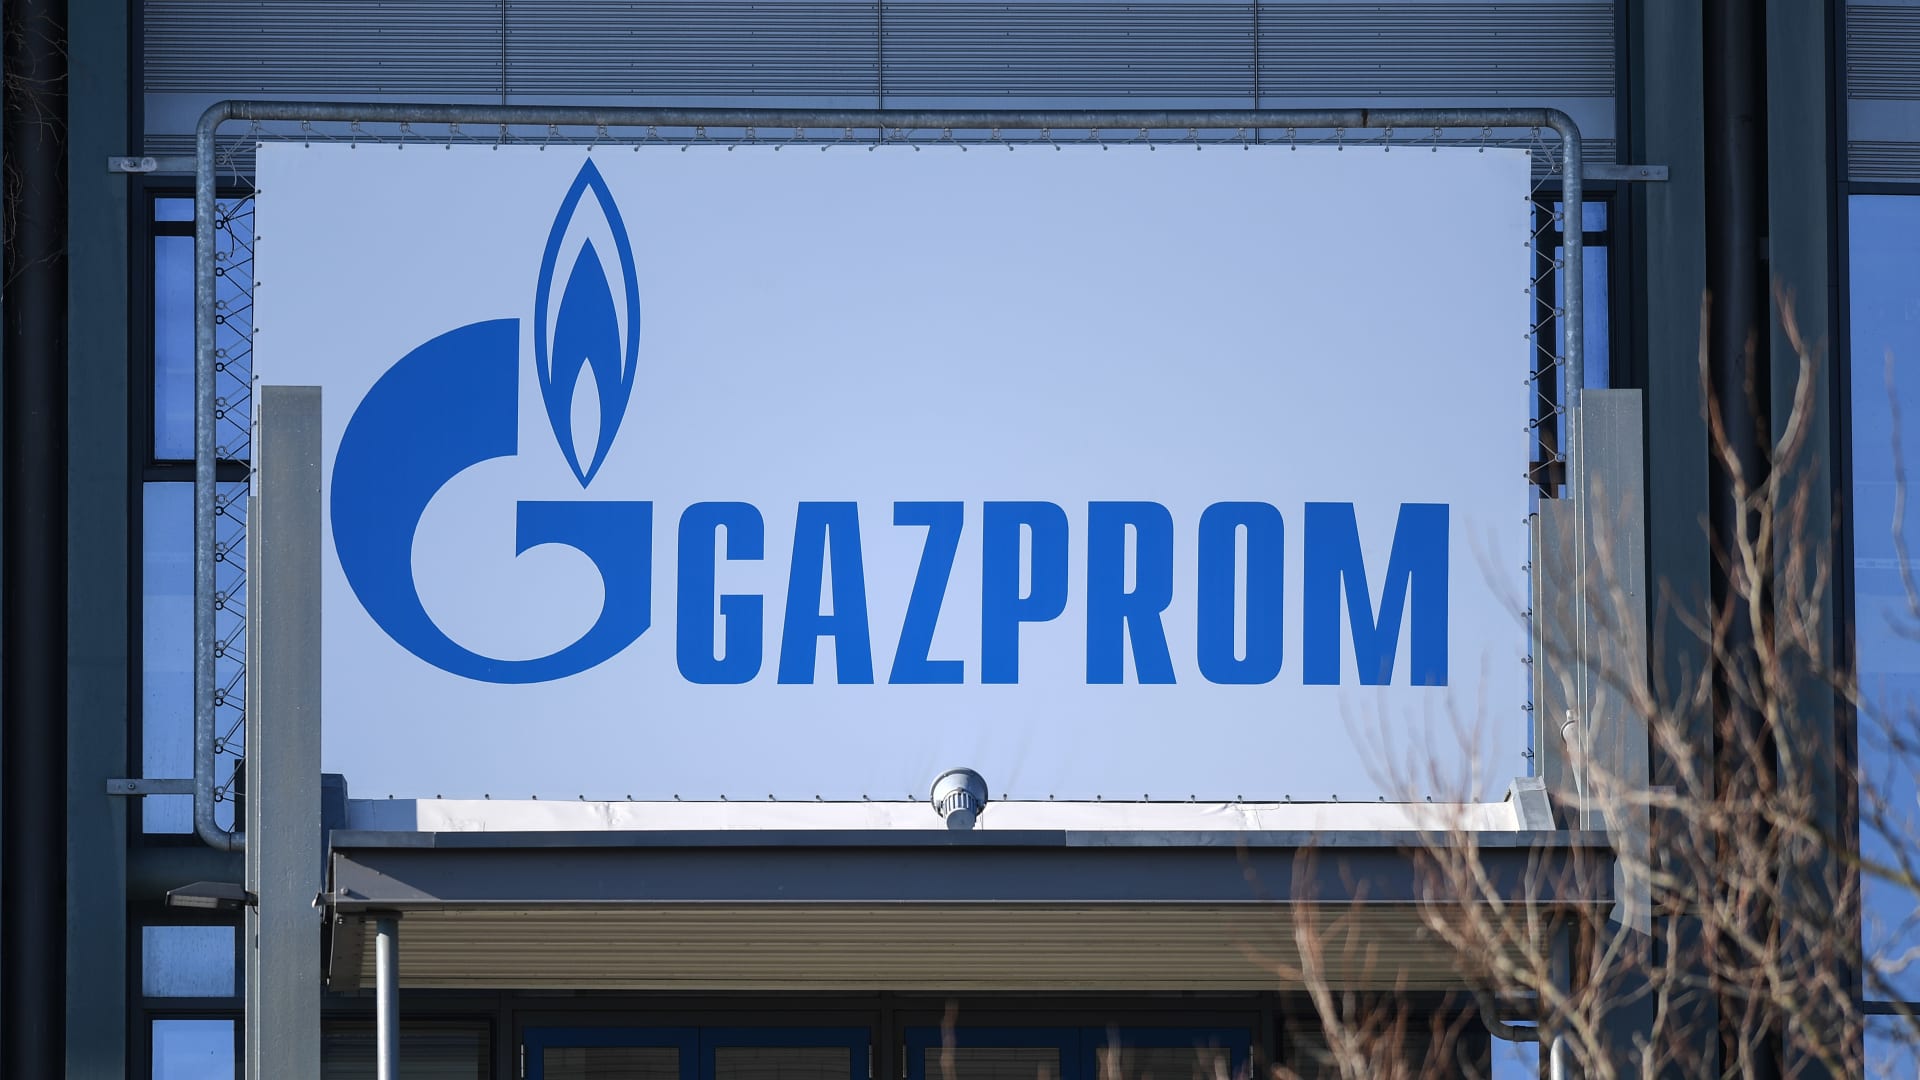 شعار شركة غازبروم الروسية 